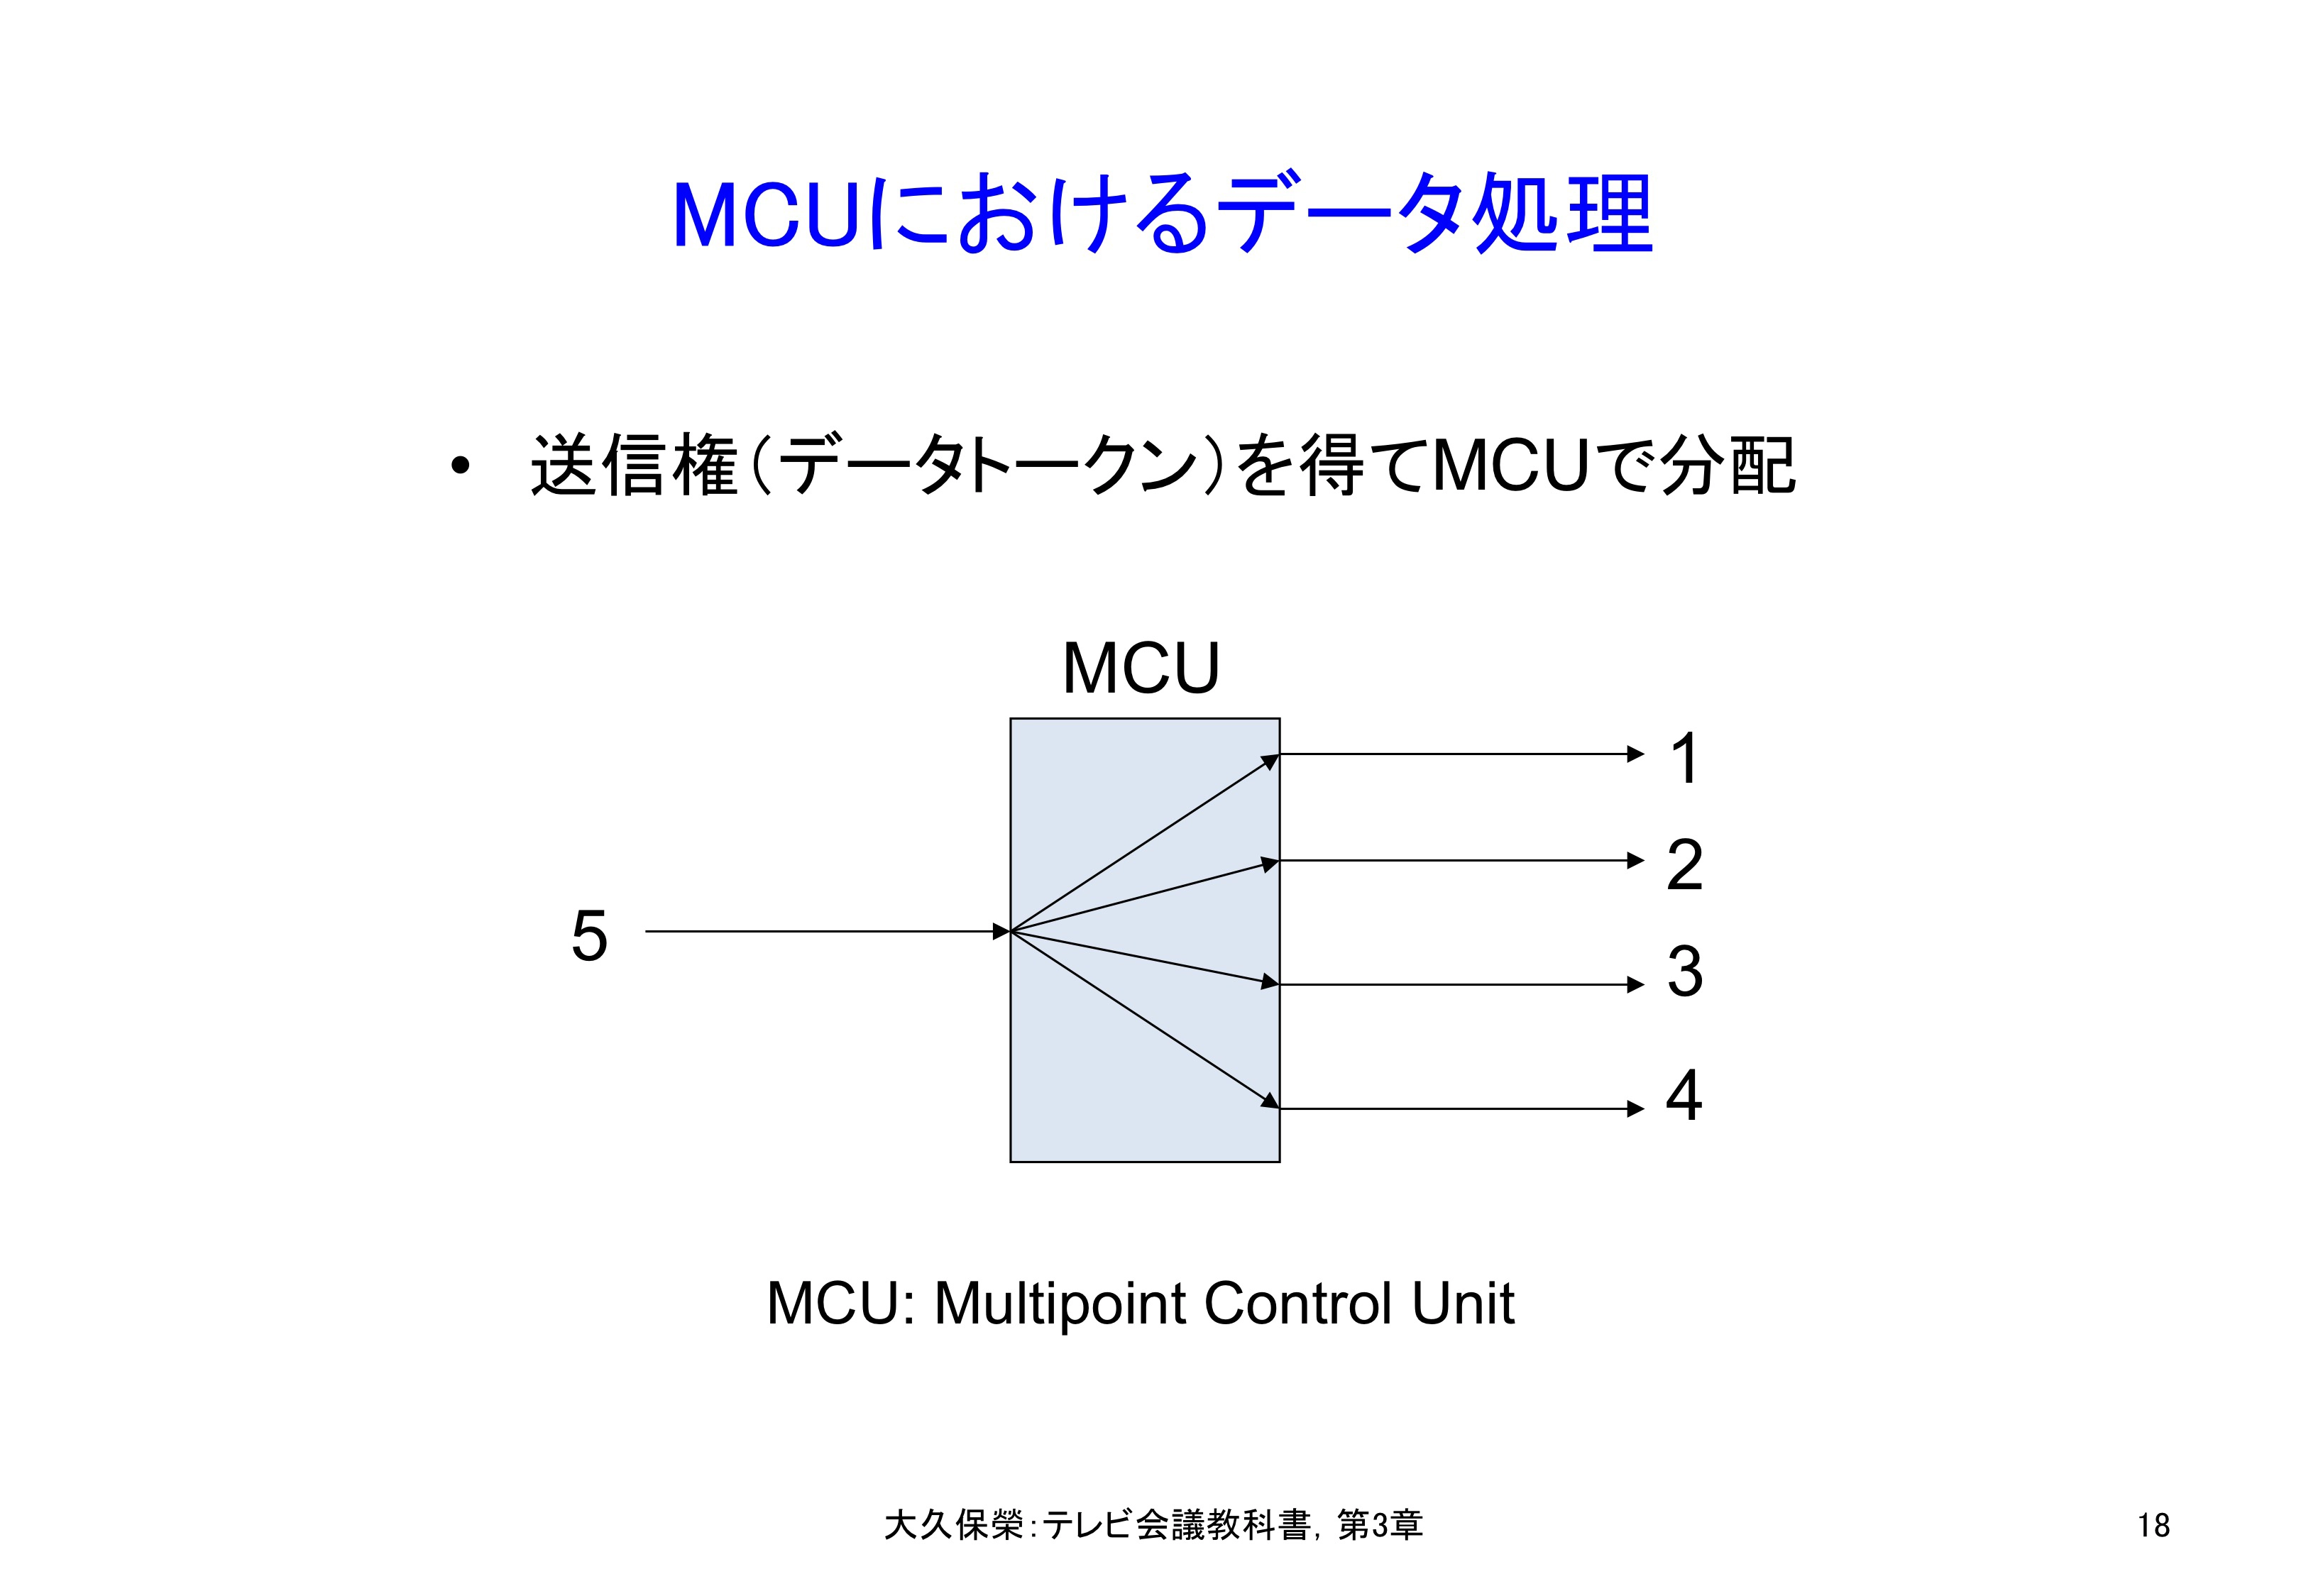 図3-18 MCUにおけるデータ処理